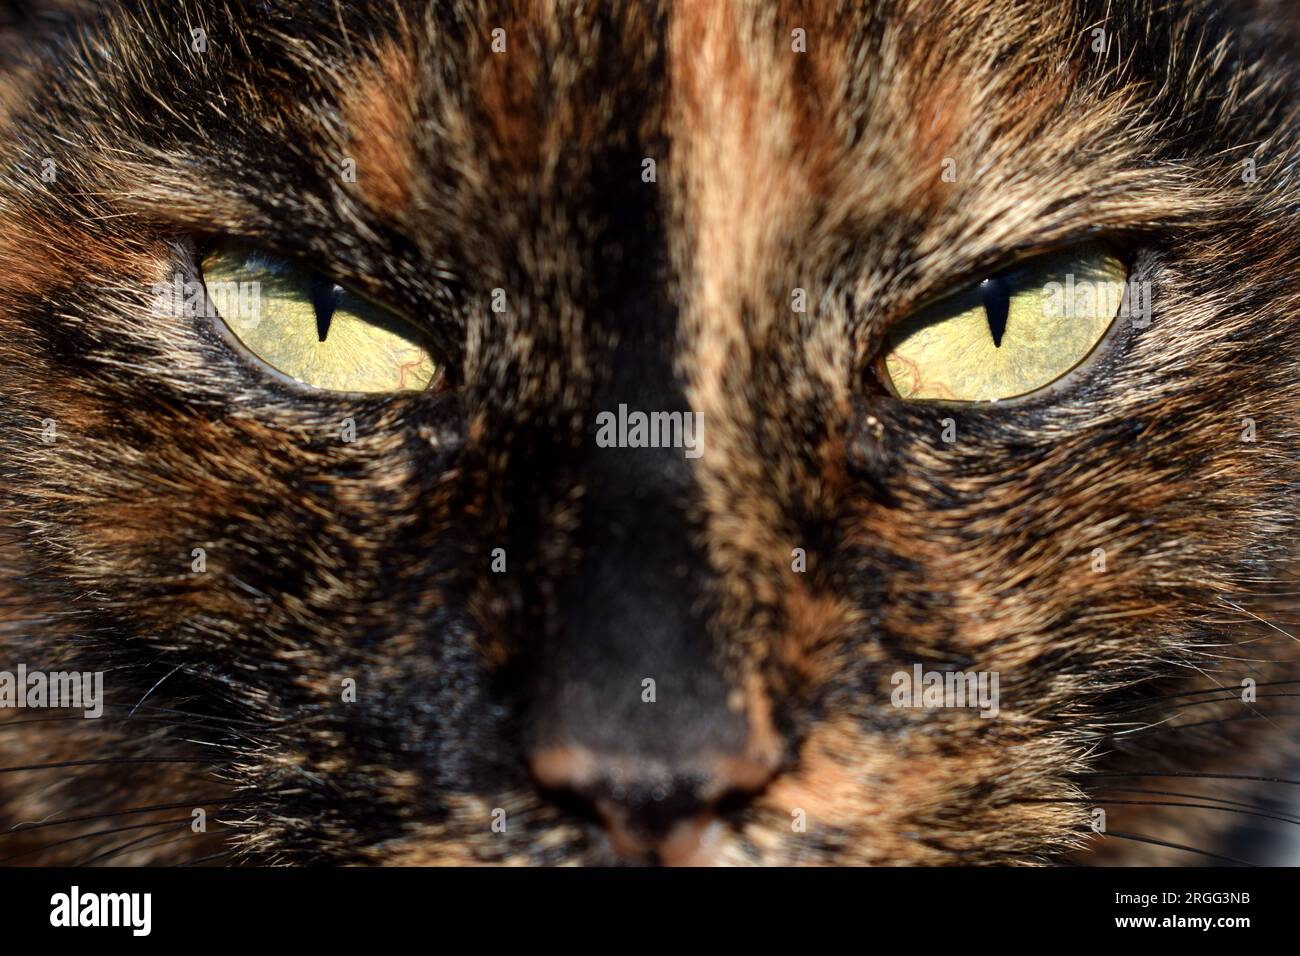 Ritratto ravvicinato di un volto domestico di gatto nero e marrone con occhi verdi chiari dall'aspetto serio Foto Stock